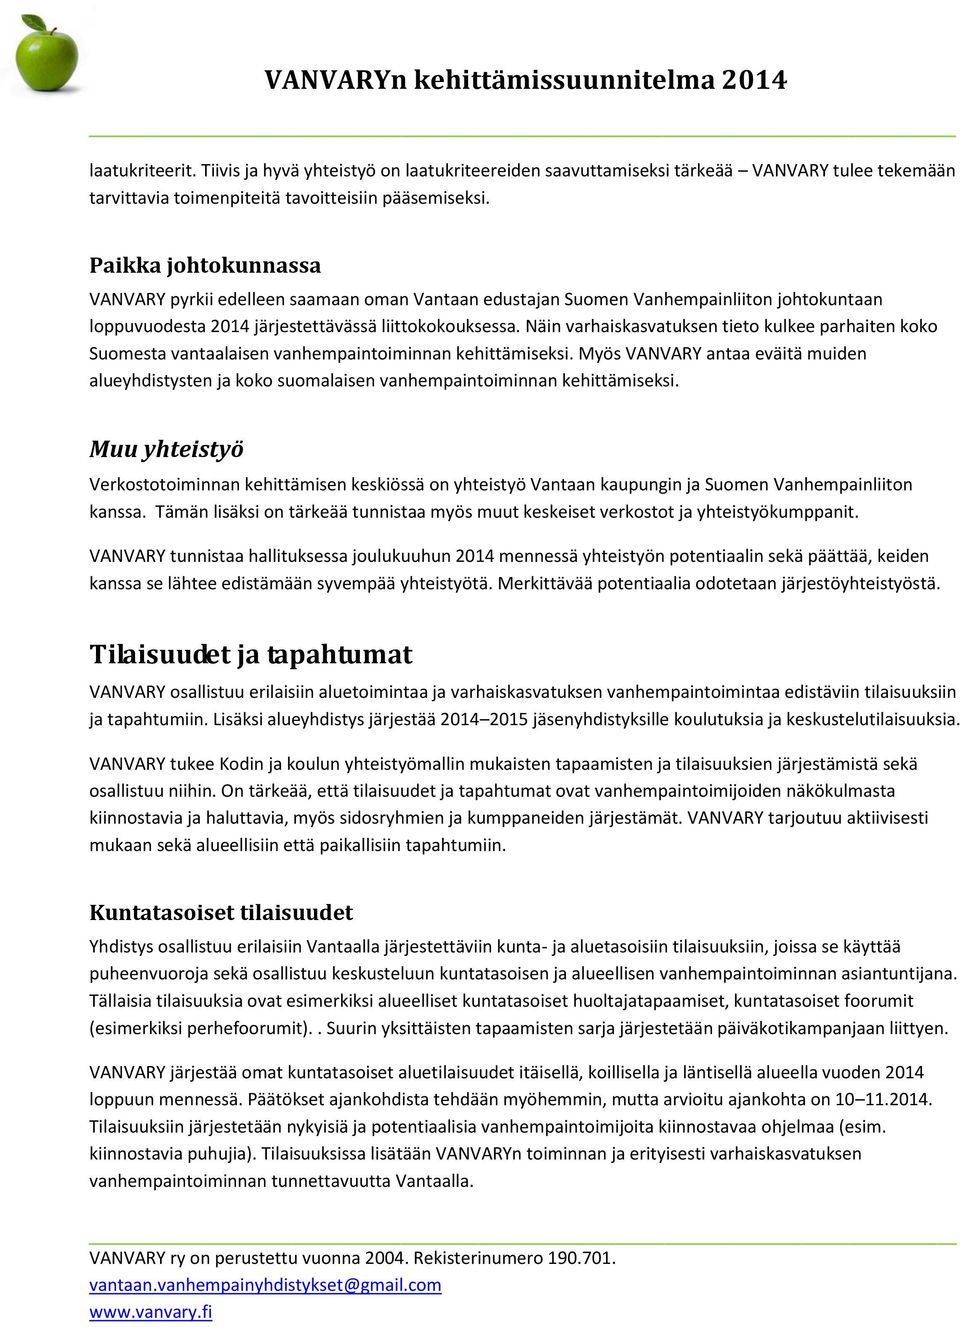 Näin varhaiskasvatuksen tieto kulkee parhaiten koko Suomesta vantaalaisen vanhempaintoiminnan kehittämiseksi.